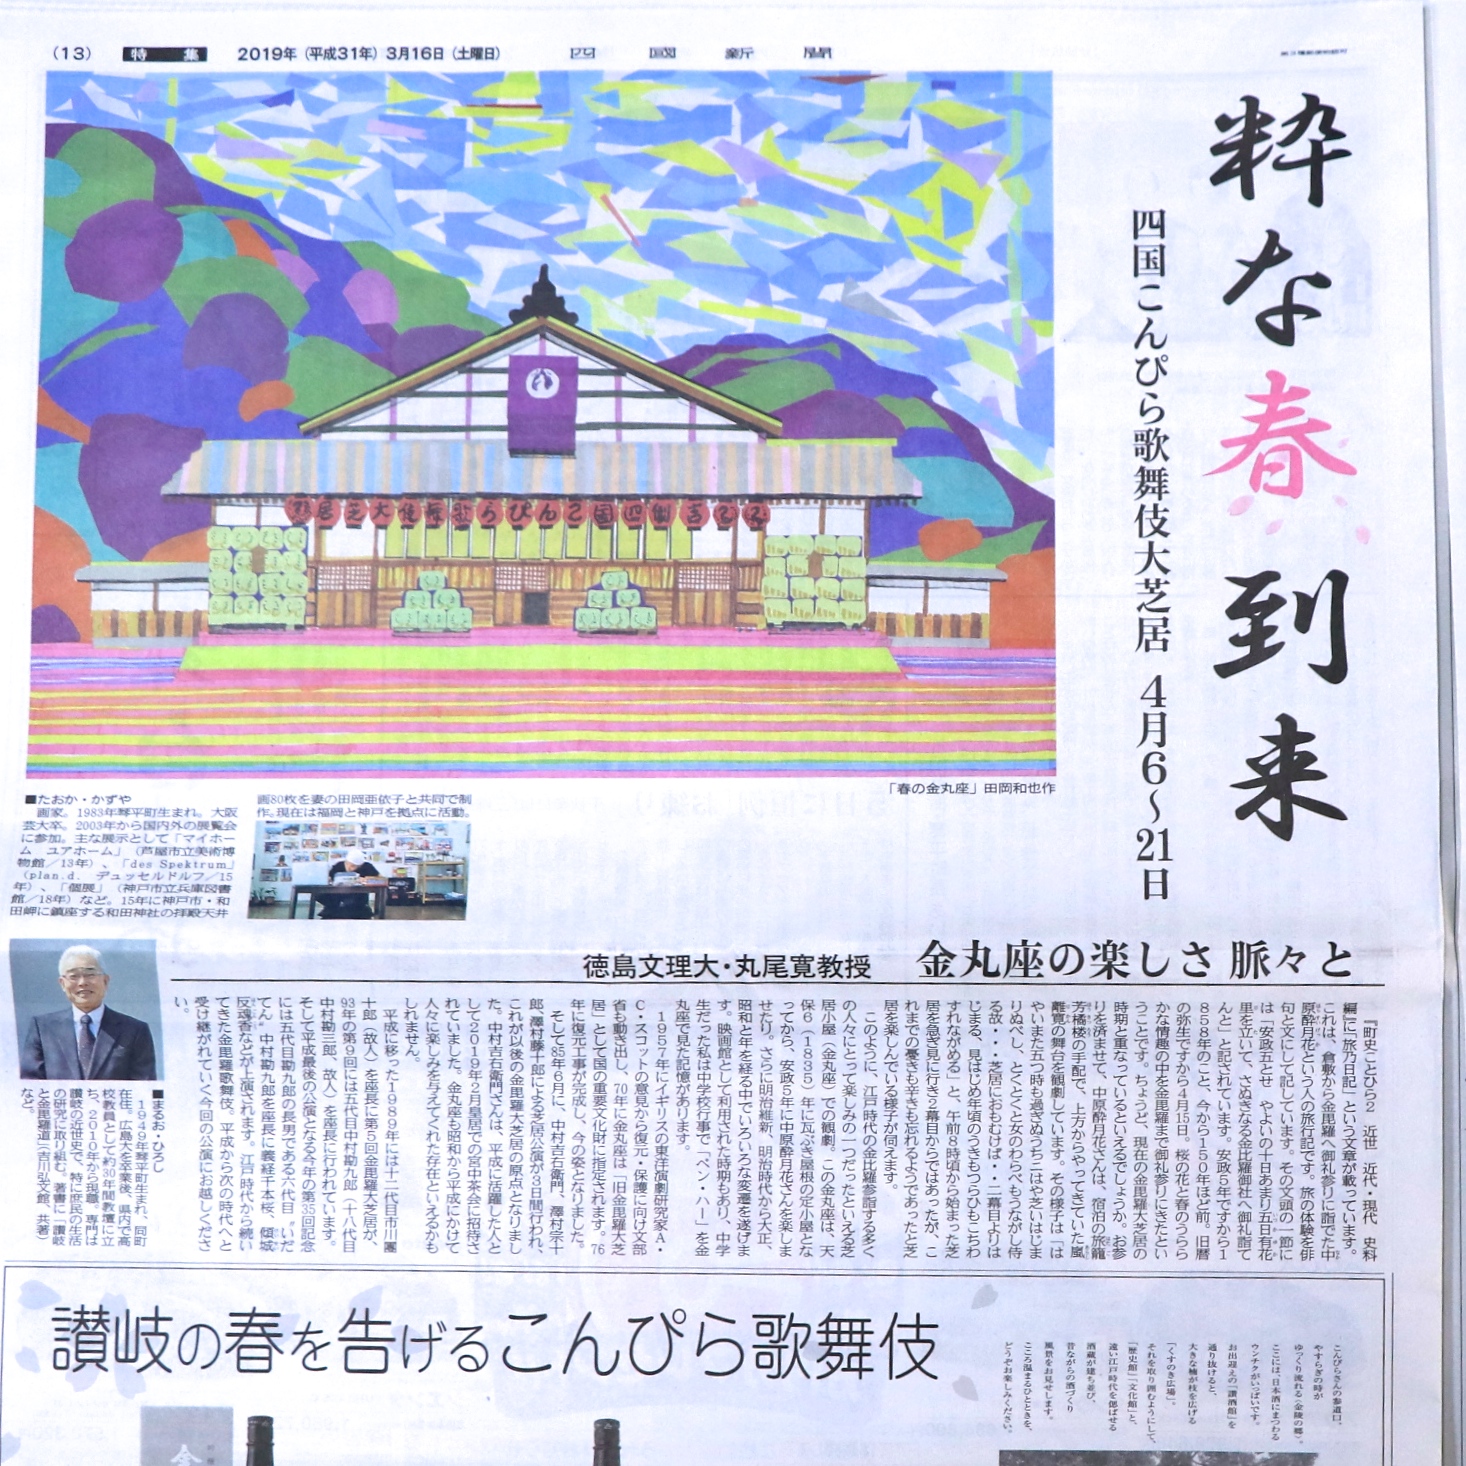 四国こんぴら歌舞伎大芝居の絵を制作。 田岡和也作「春の金丸座」四国新聞にて公開。